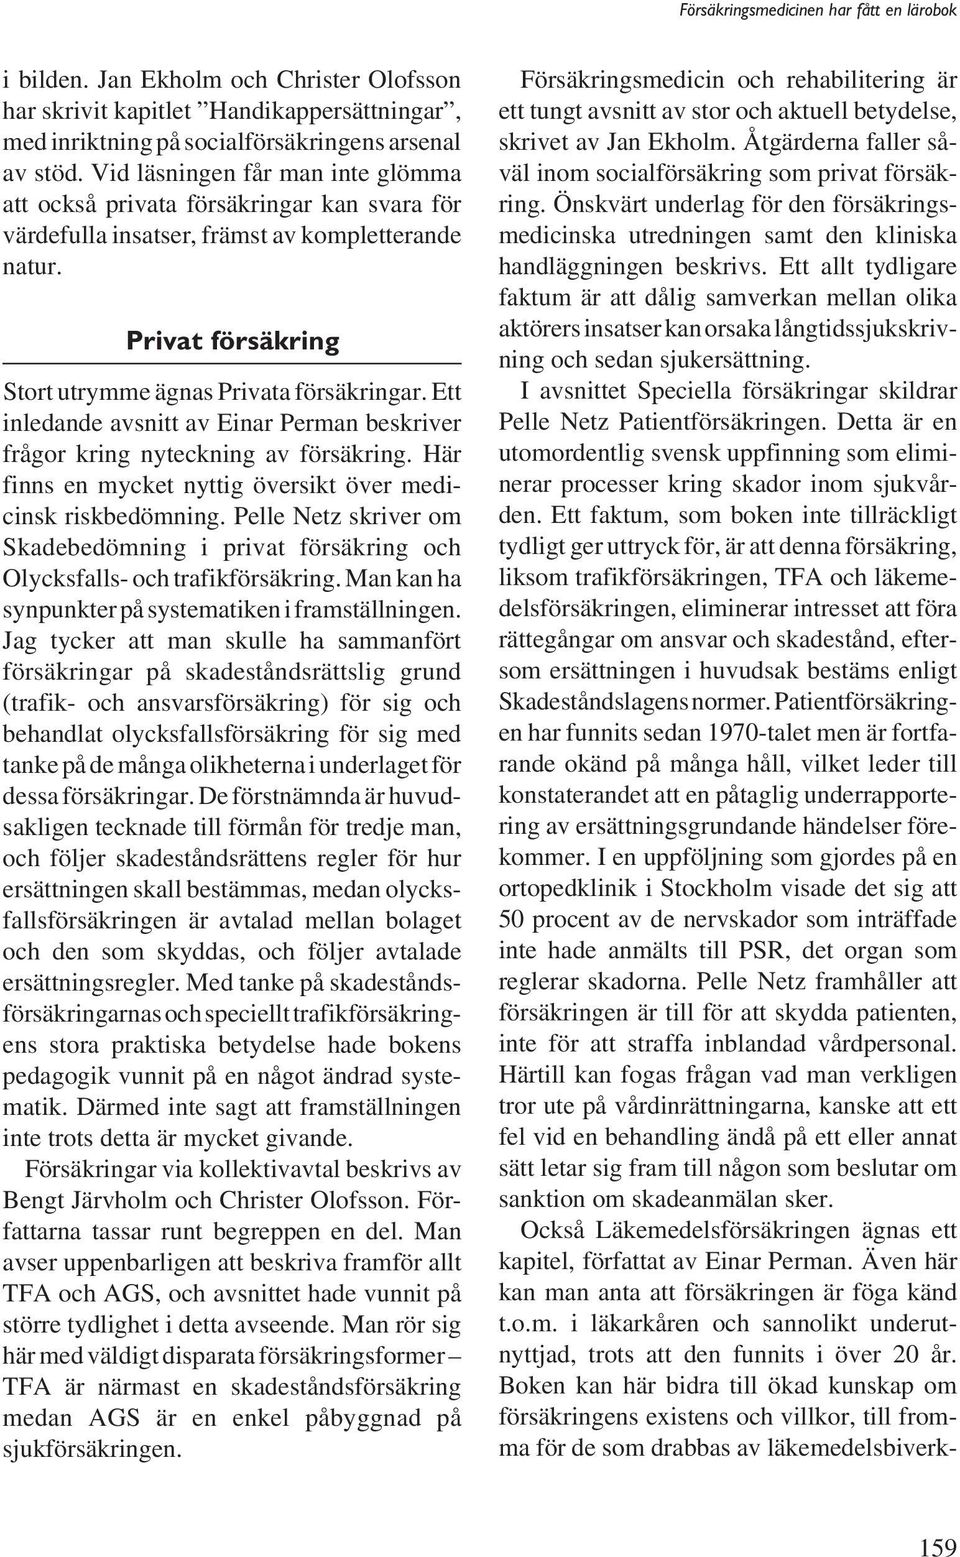 Ett inledande avsnitt av Einar Perman beskriver frågor kring nyteckning av försäkring. Här finns en mycket nyttig översikt över medicinsk riskbedömning.